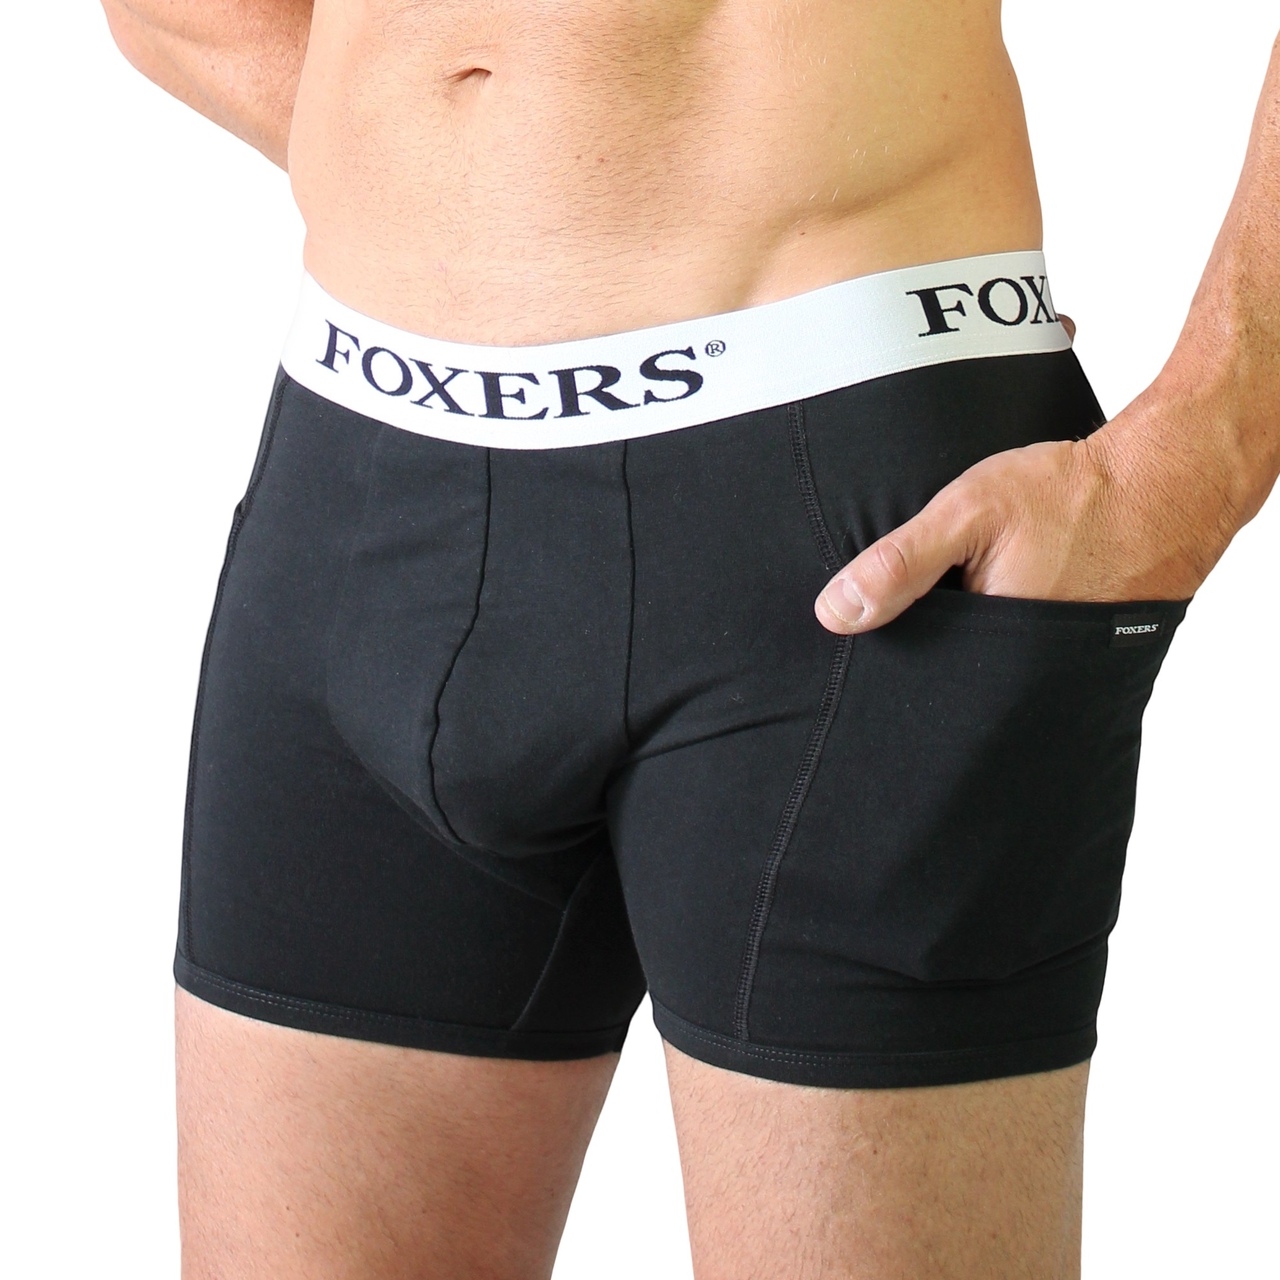 Underwear With Pockets